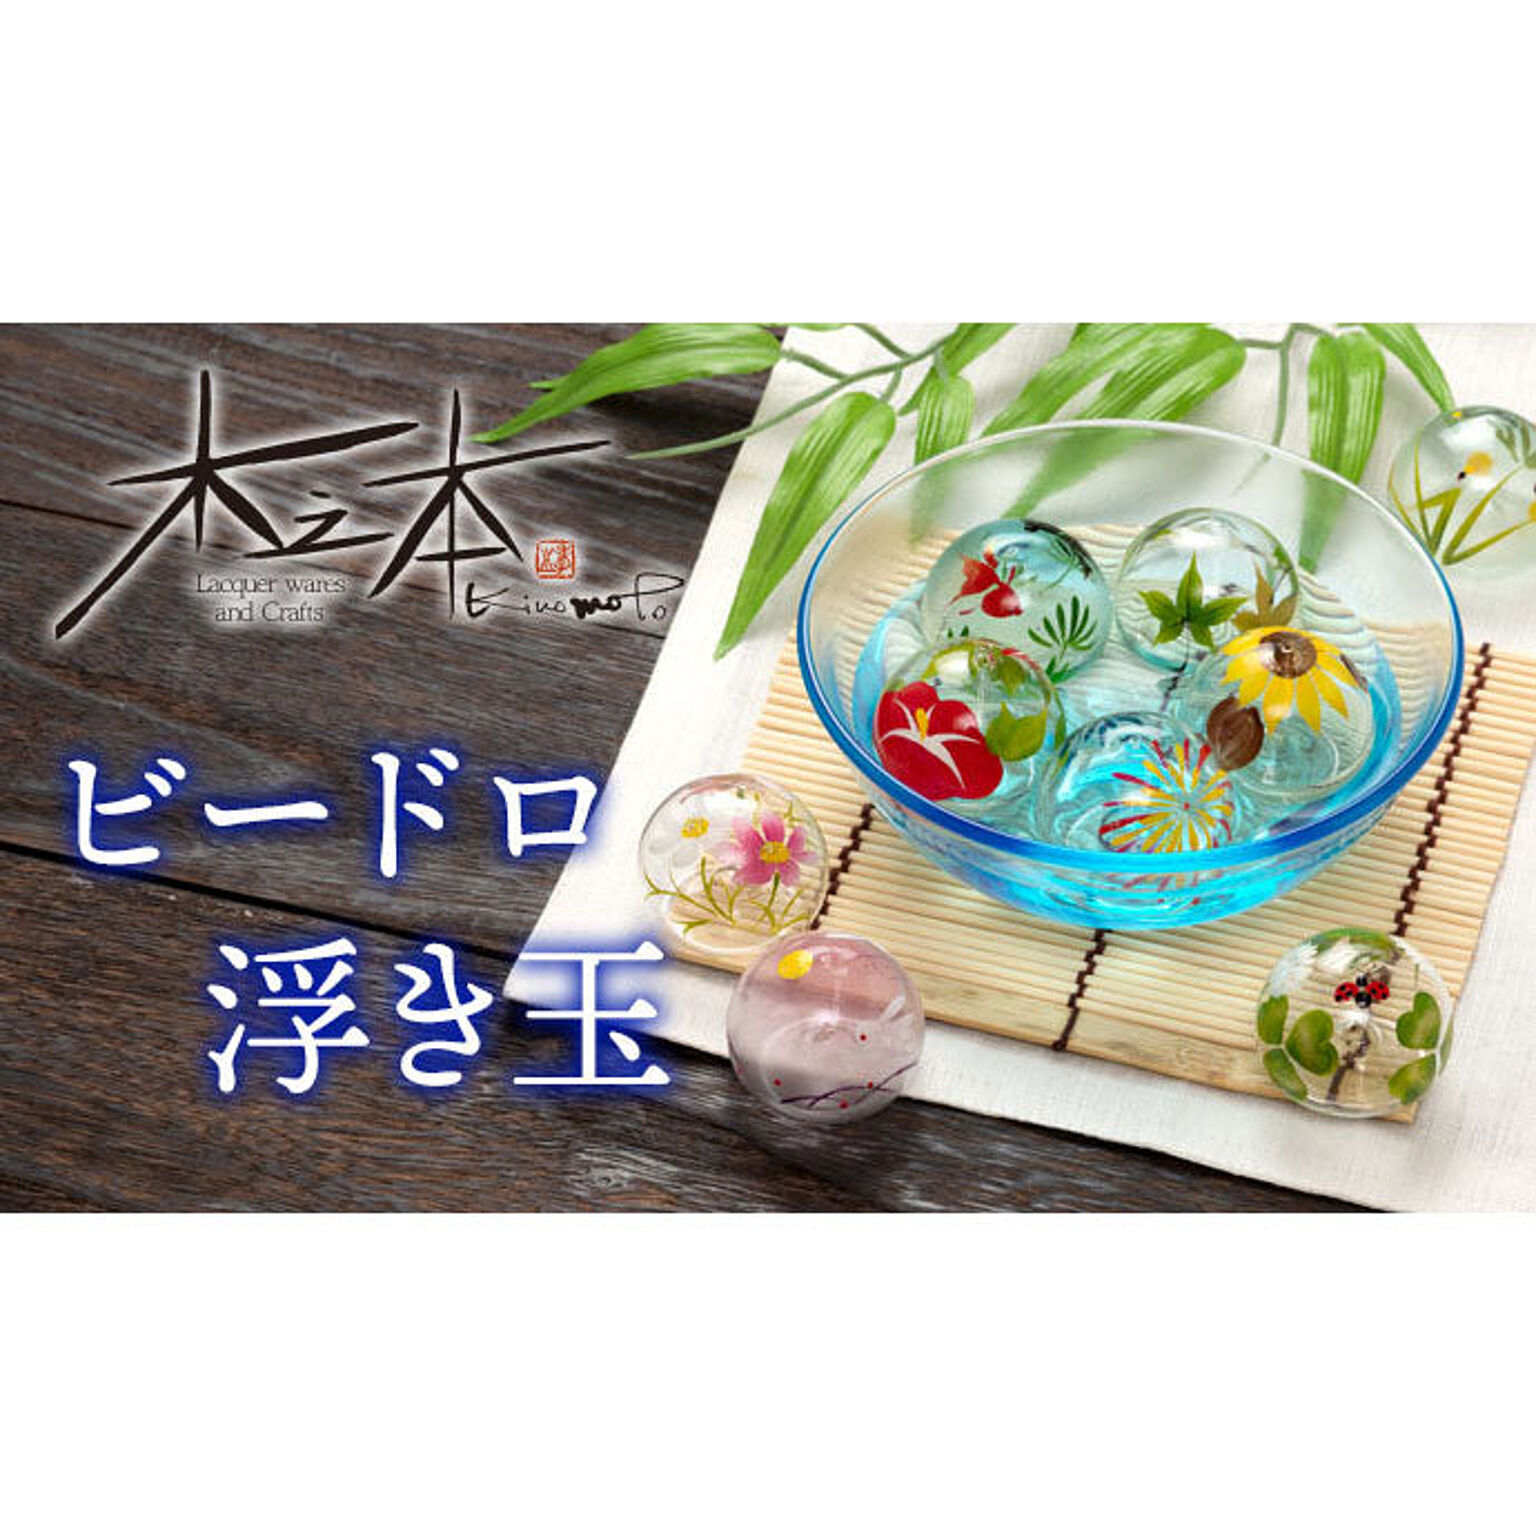 ビードロ浮き玉 小 花火 水に浮かべて涼を感じるインテリア 木之本 福島県の工芸品 Glass Float Fukushima Craft 通販 Roomclipショッピング